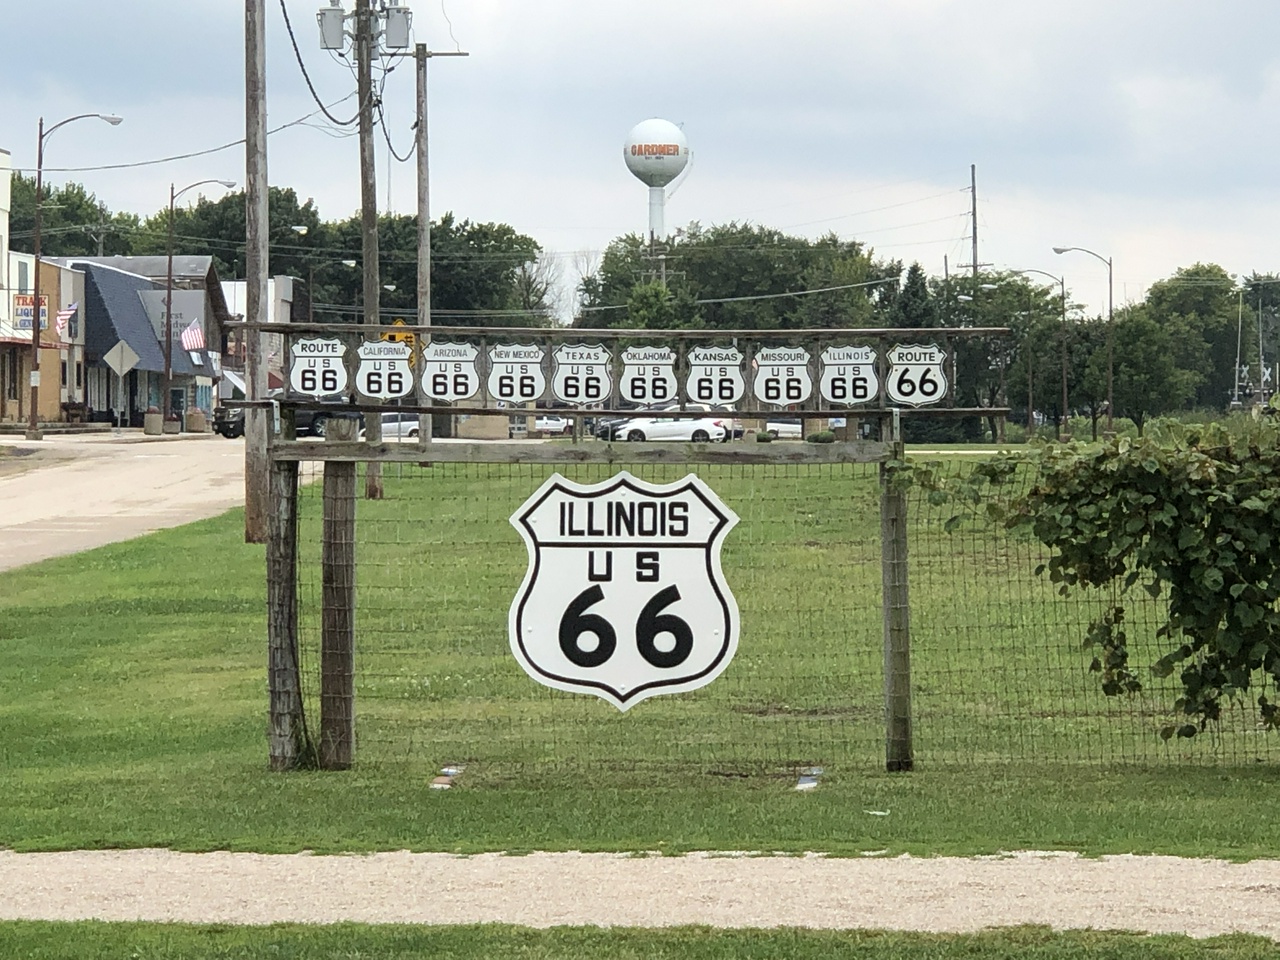 Die Route 66 führt durch acht Staaten